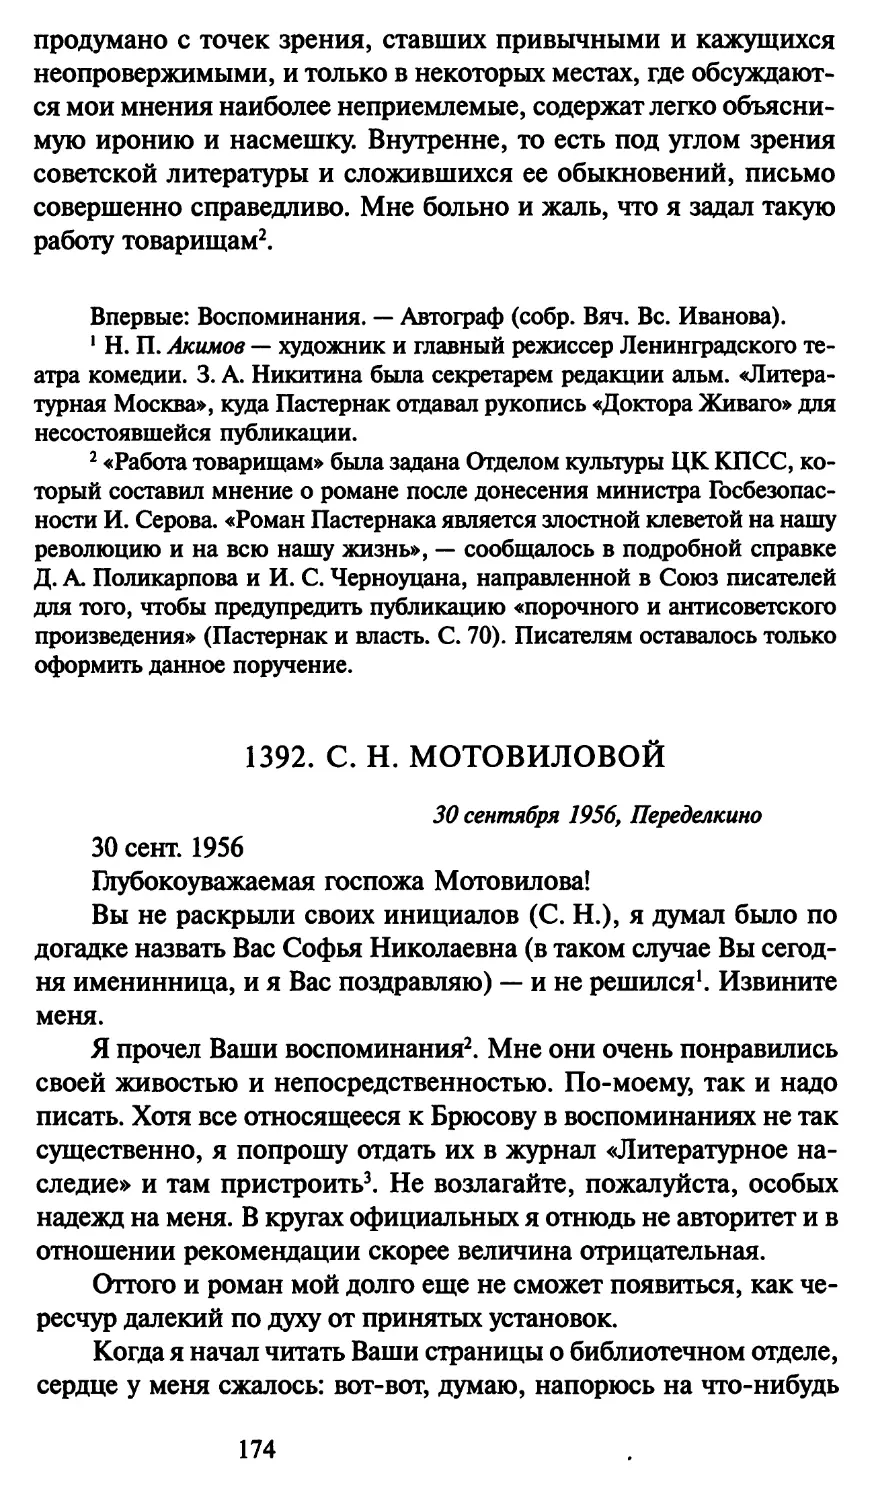 1392. С. Н. Мотовиловой 30 сентября 1956